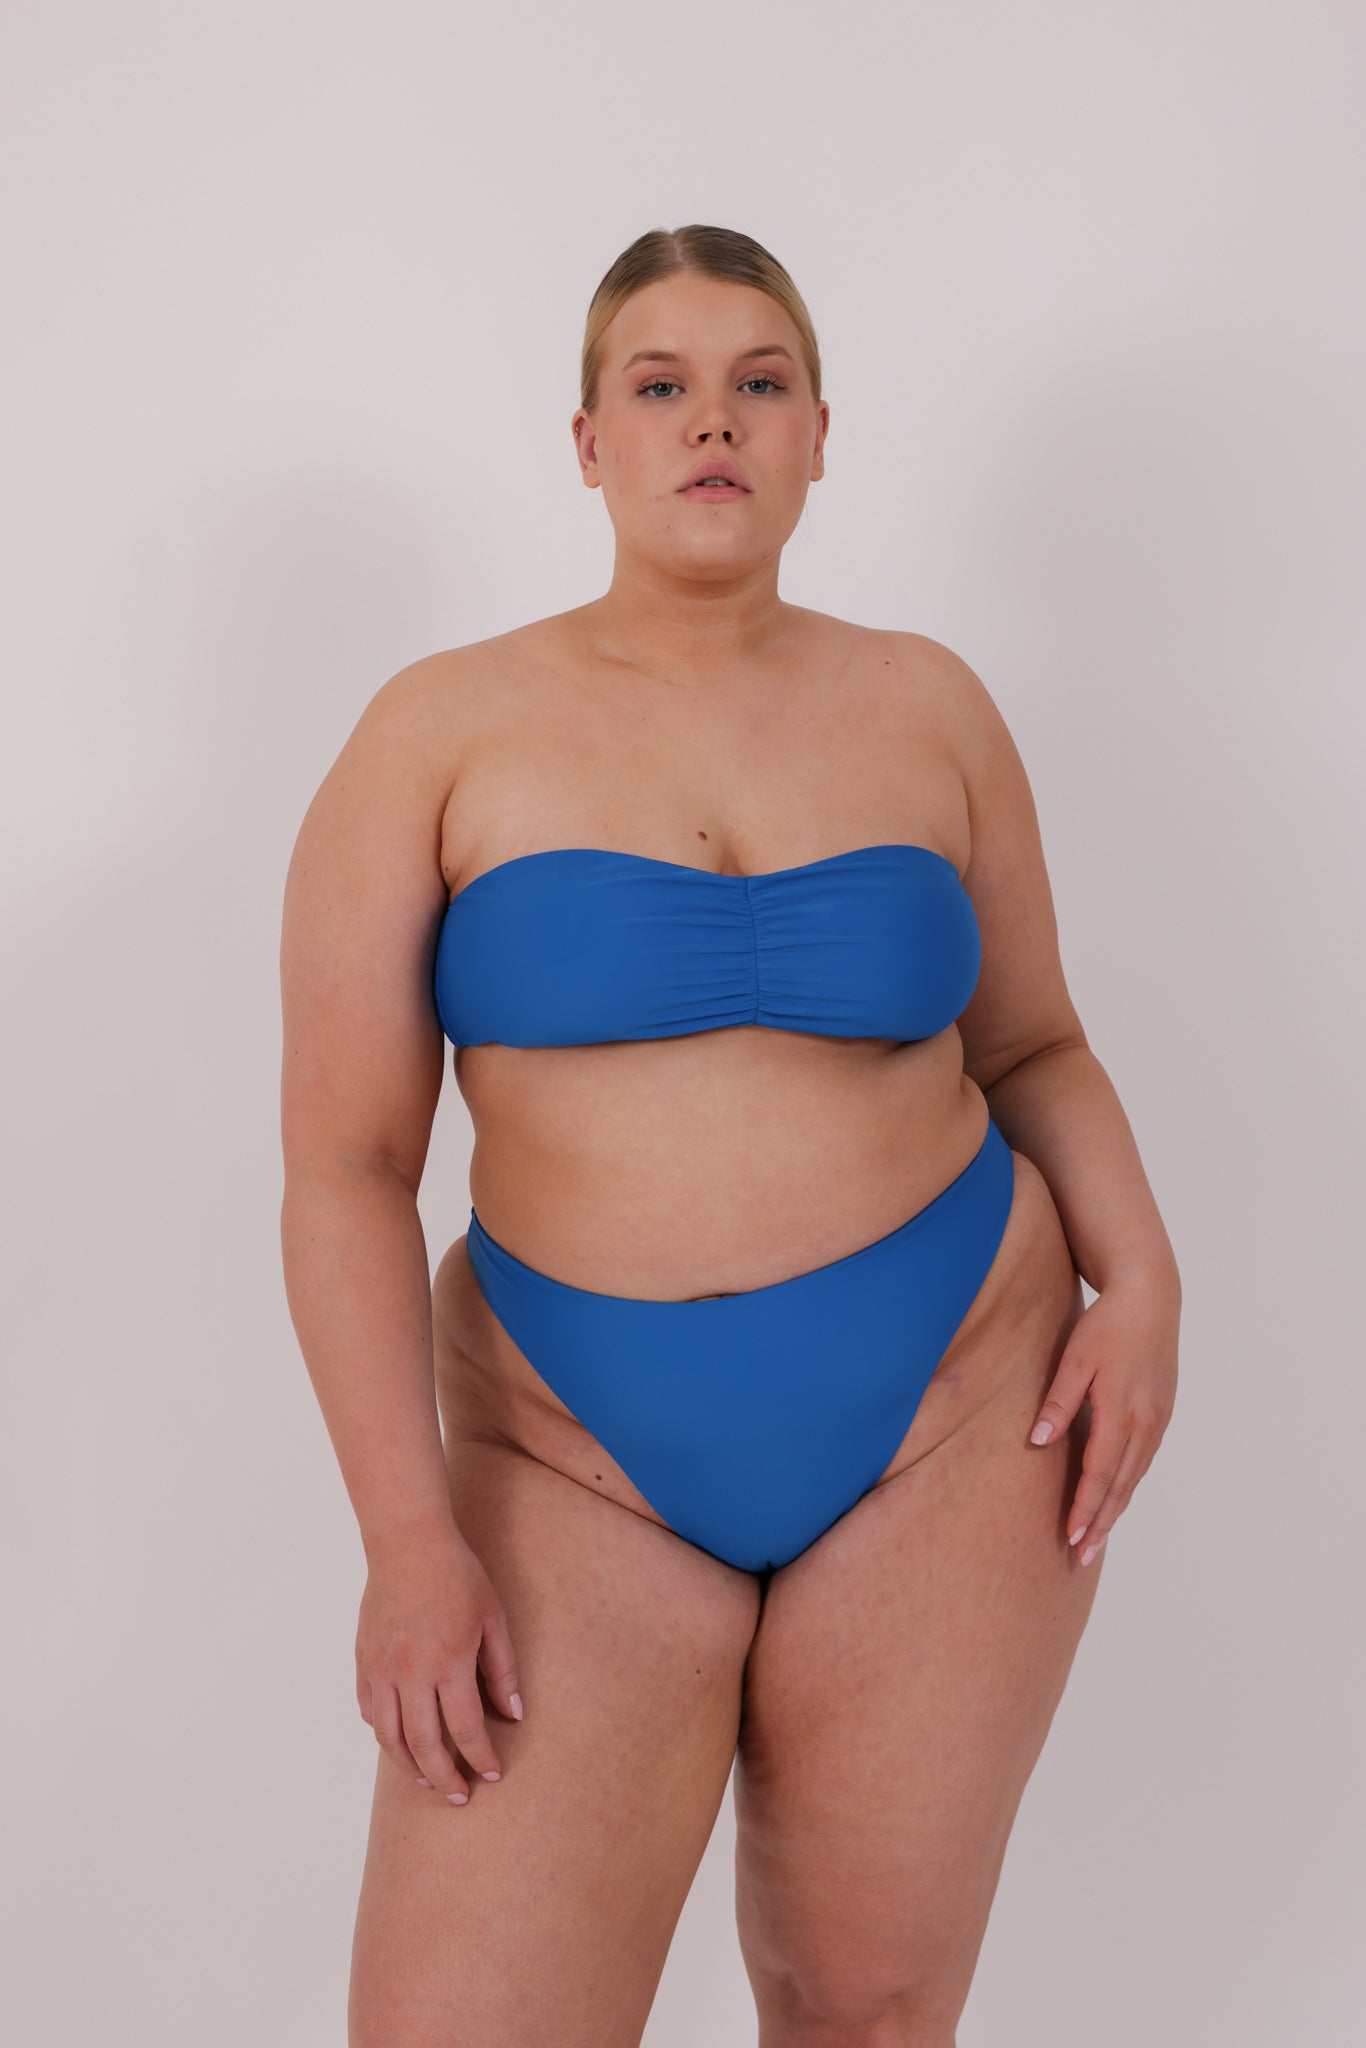 blue strapless bikini in model